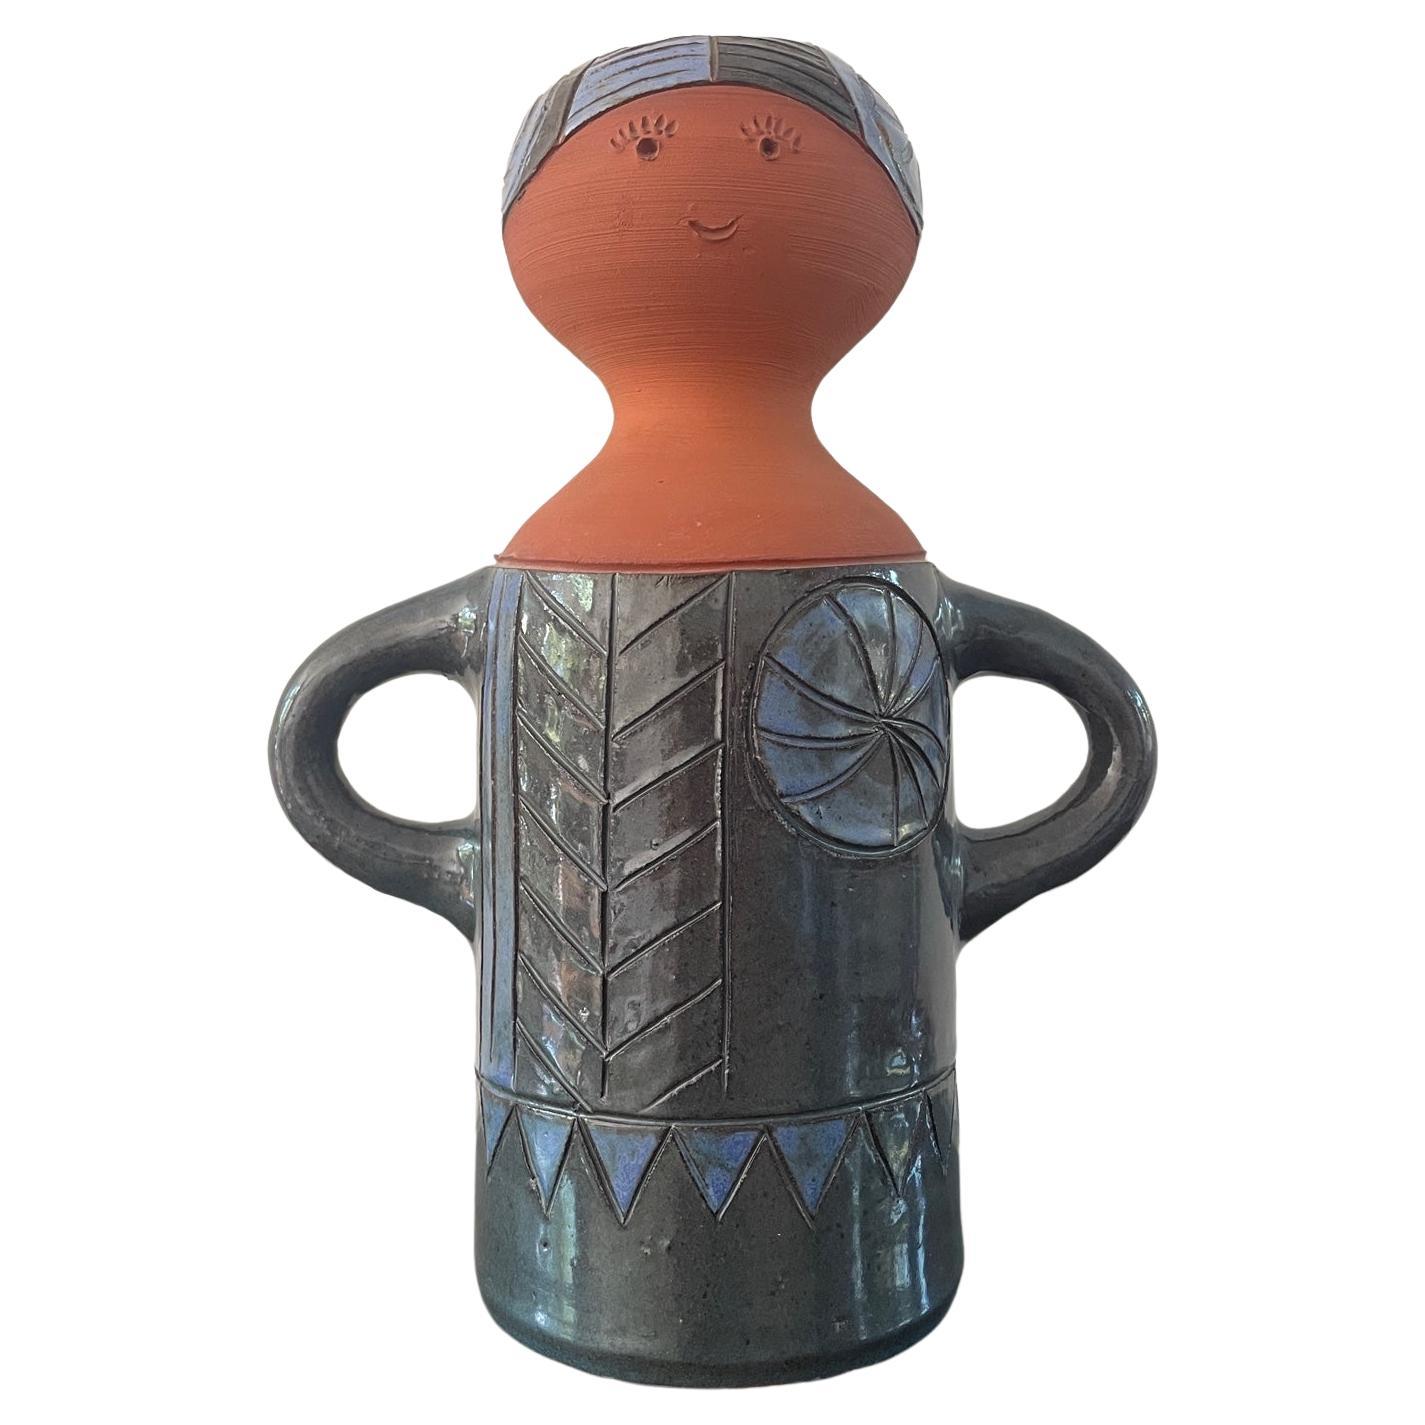 Vera Kaij Steneby, earthenware vase in the form of female figure. Swedish design